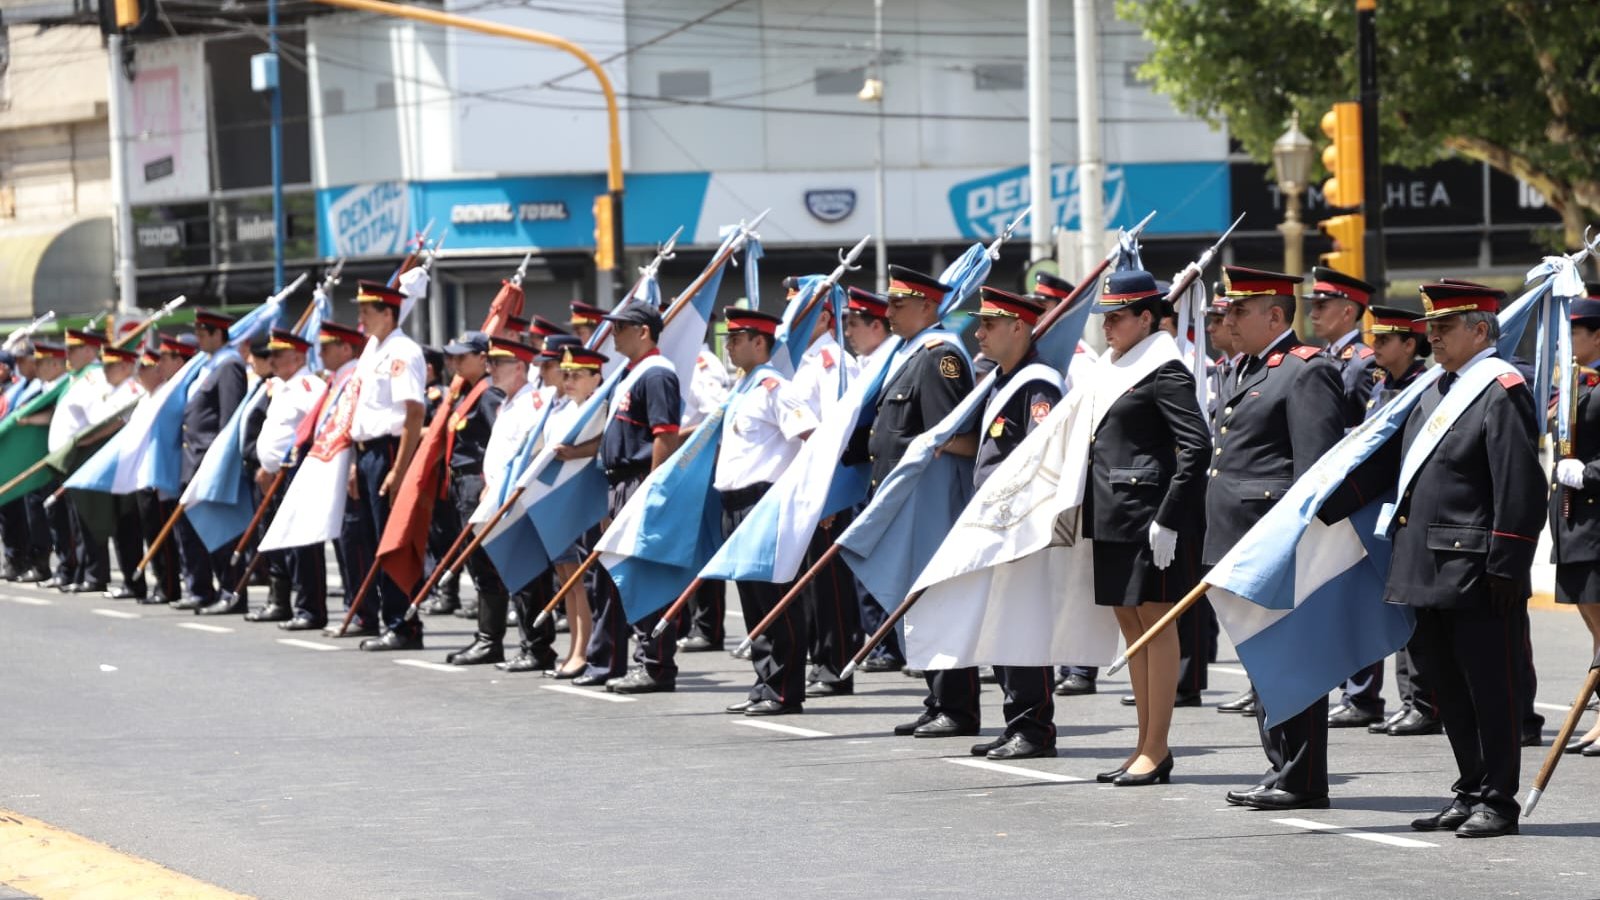 Avellaneda homenajeó a los Bomberos Voluntarios con un gran desfile popular